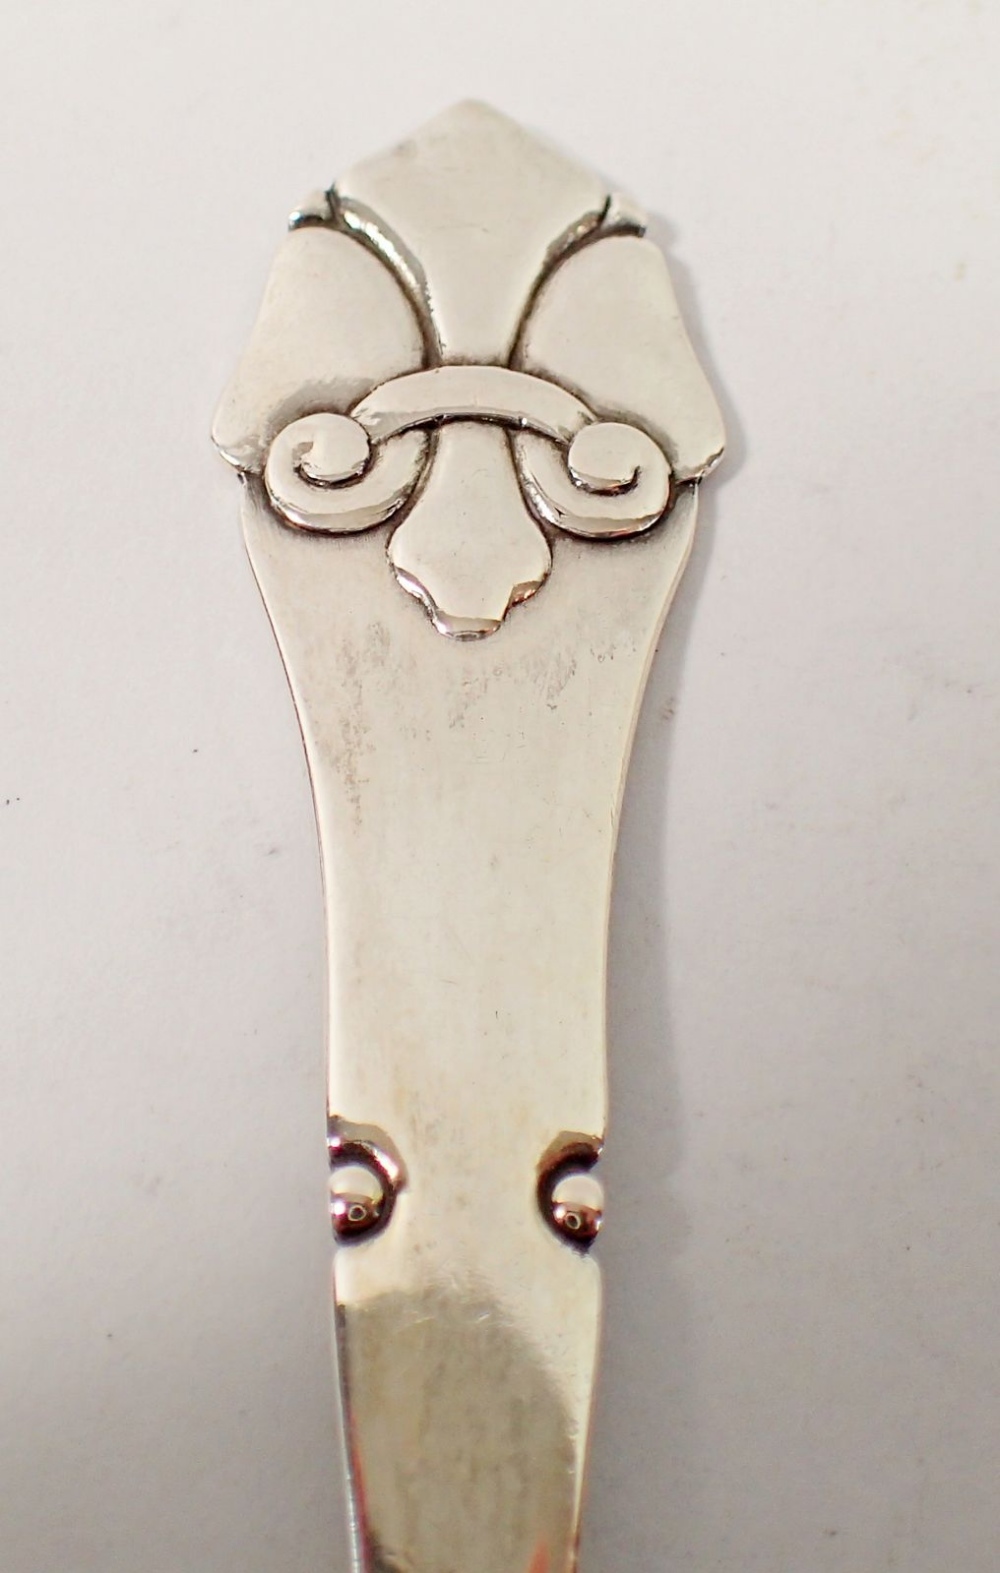 A Danish silver spoon with Art Nouveau style teriminal, Makers mark FC, 15cm long - Bild 3 aus 3